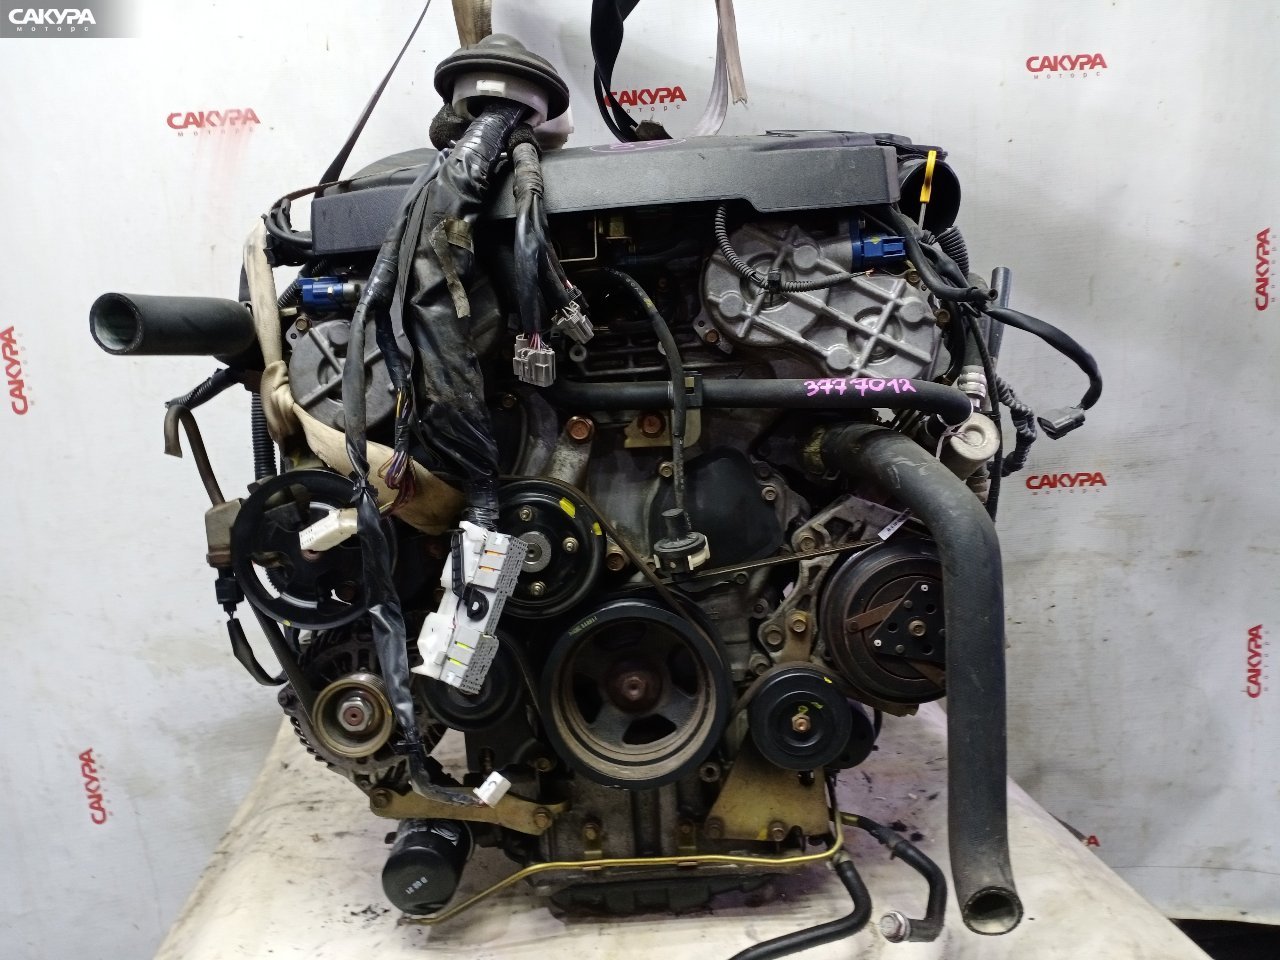 Двигатель Nissan Stagea NM35 VQ25DD: купить в Сакура Красноярск.